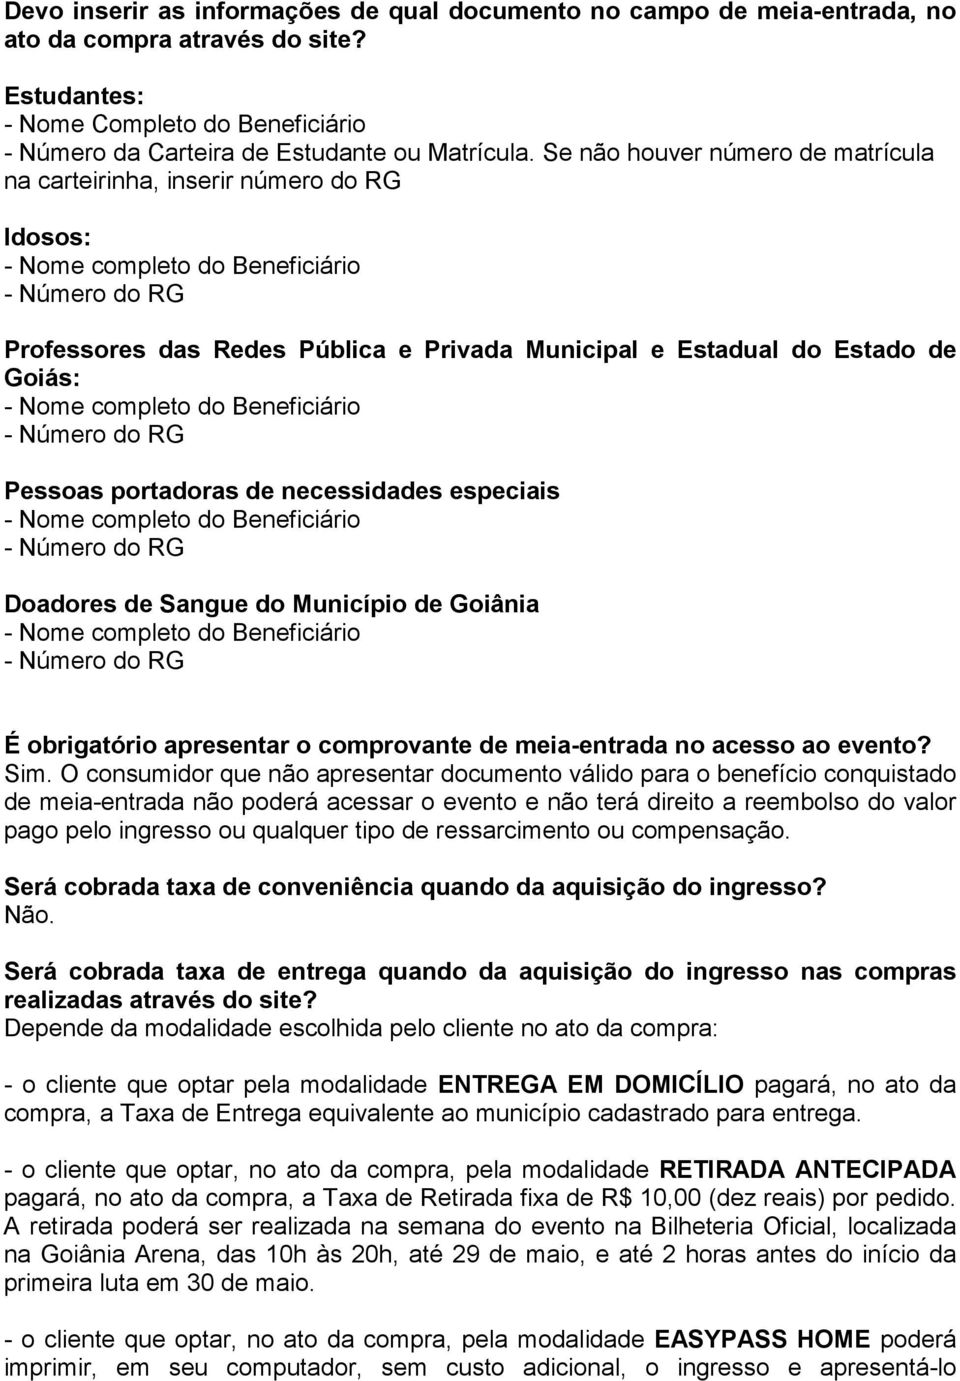 Goiás: - Nome completo do Beneficiário - Número do RG Pessoas portadoras de necessidades especiais - Nome completo do Beneficiário - Número do RG Doadores de Sangue do Município de Goiânia - Nome